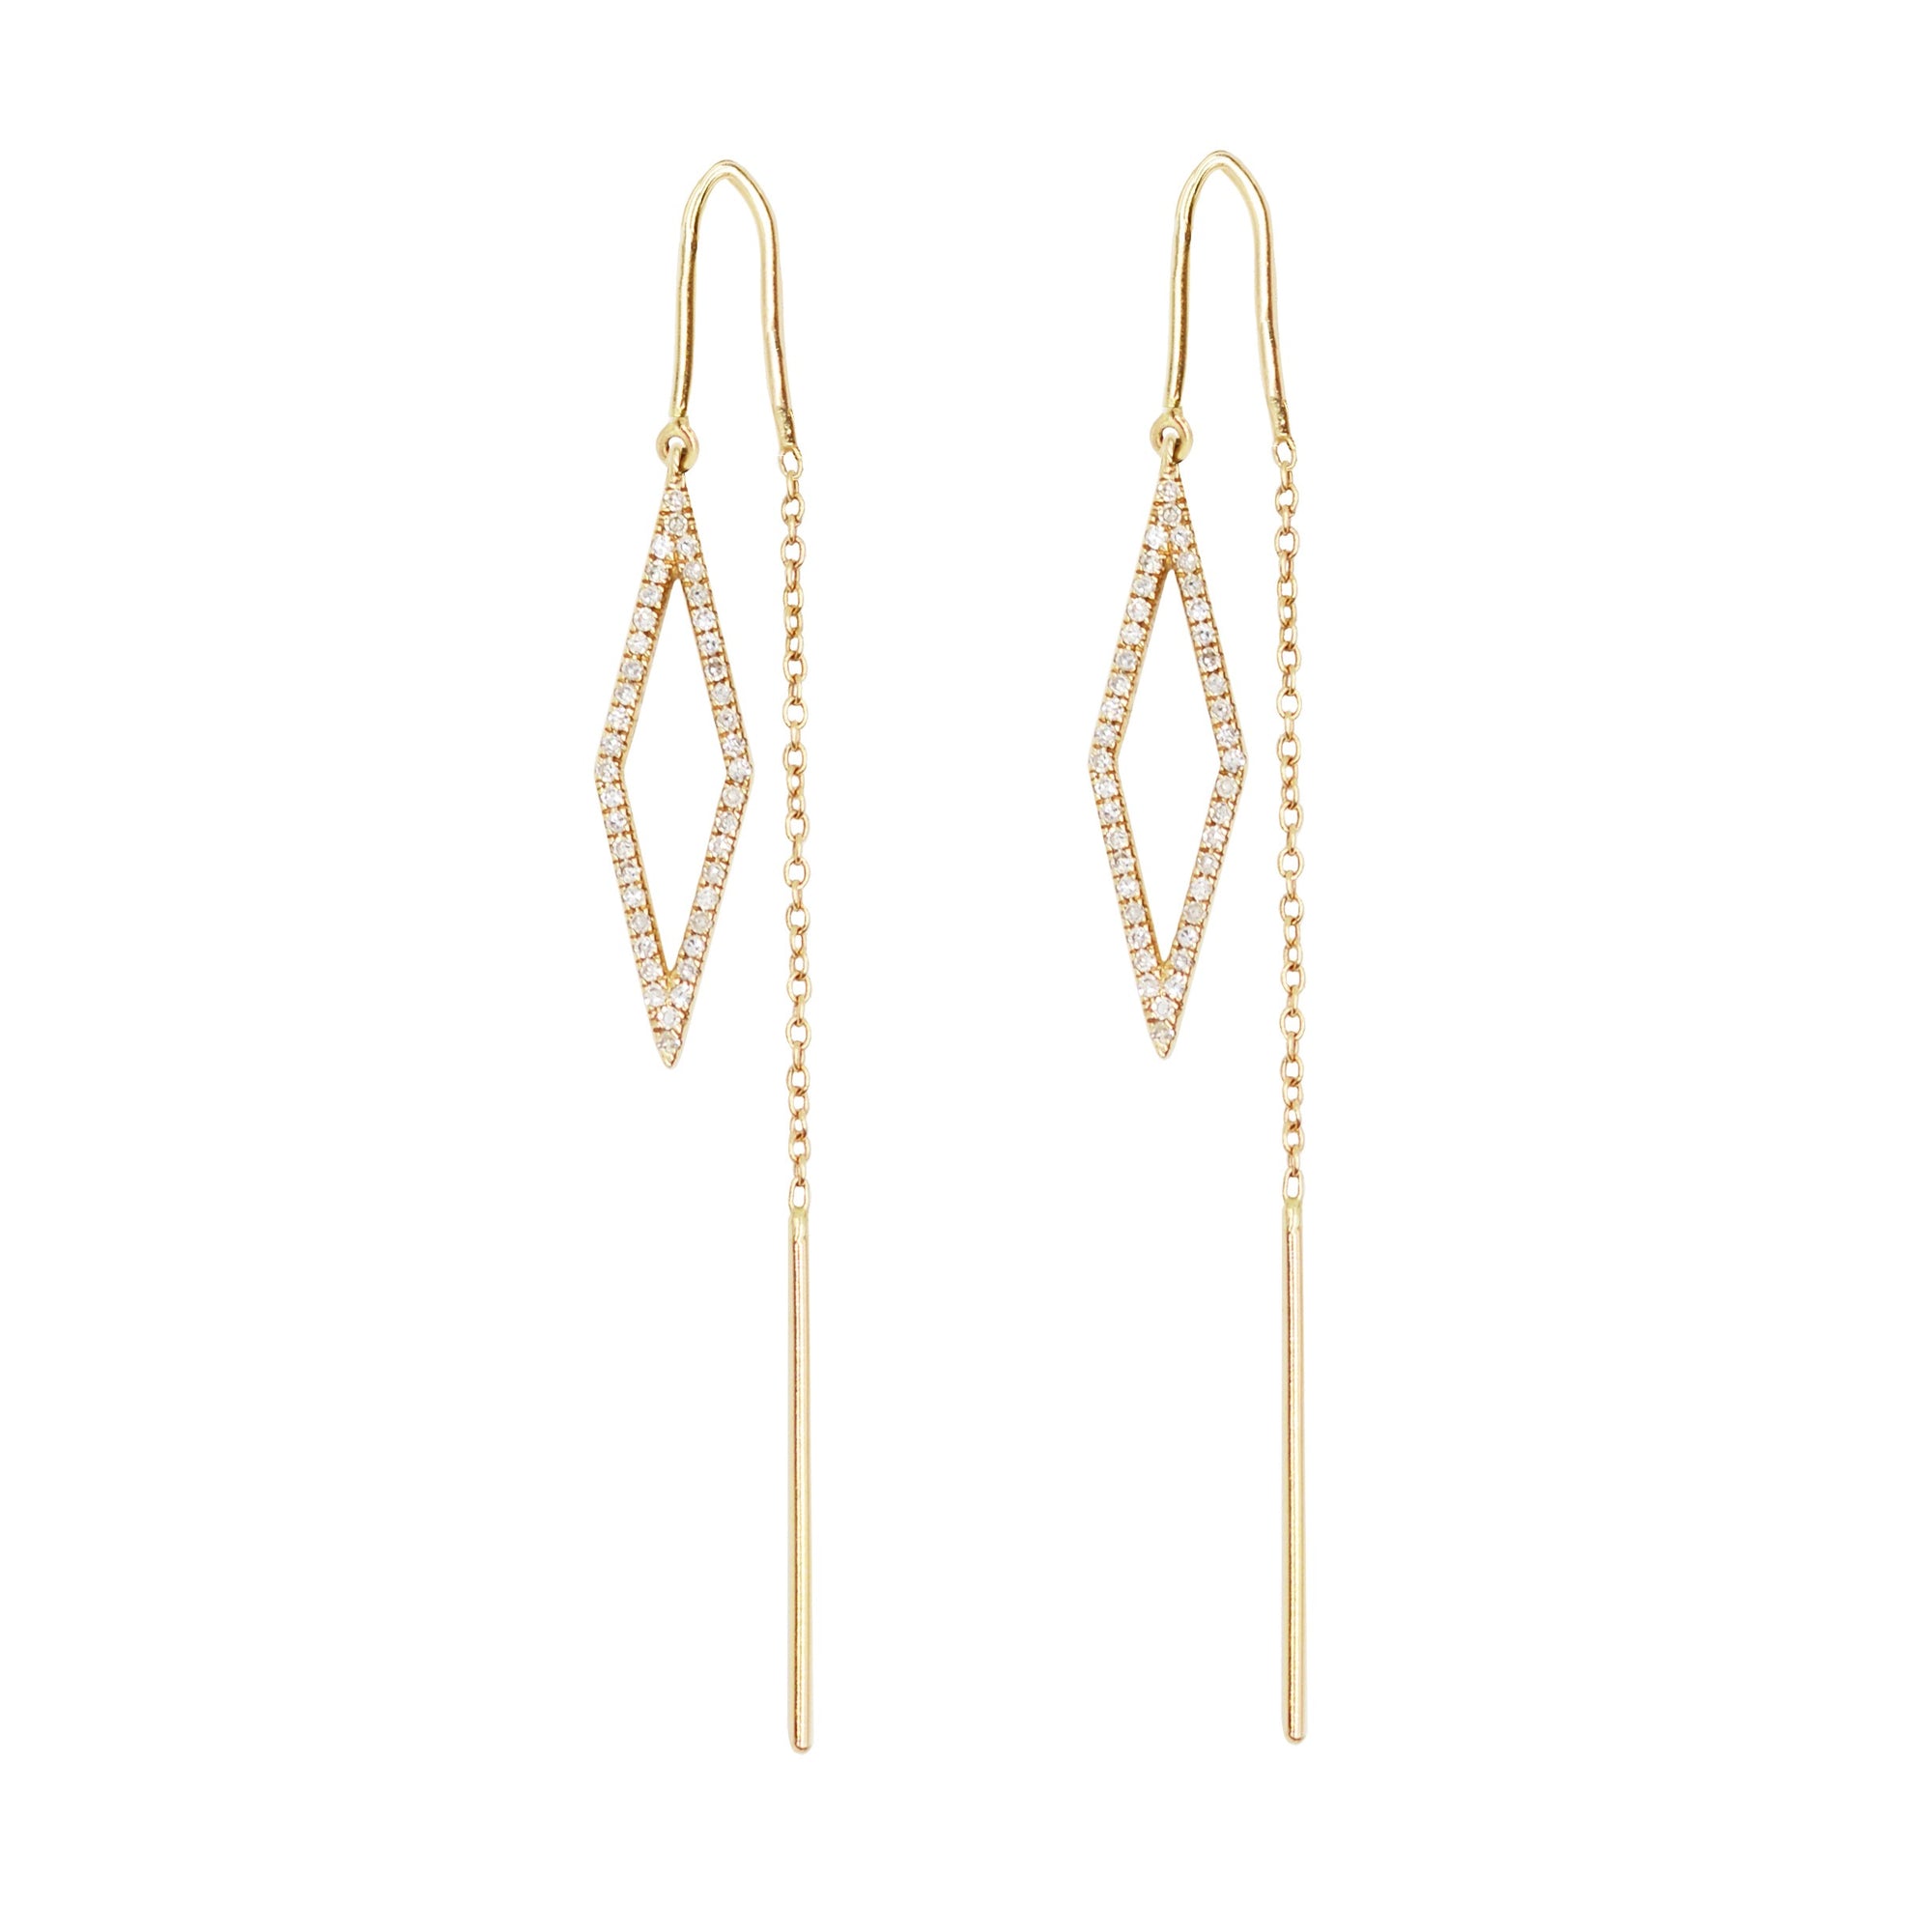 Kite Threader Earrings With Diamonds in 14k Gold